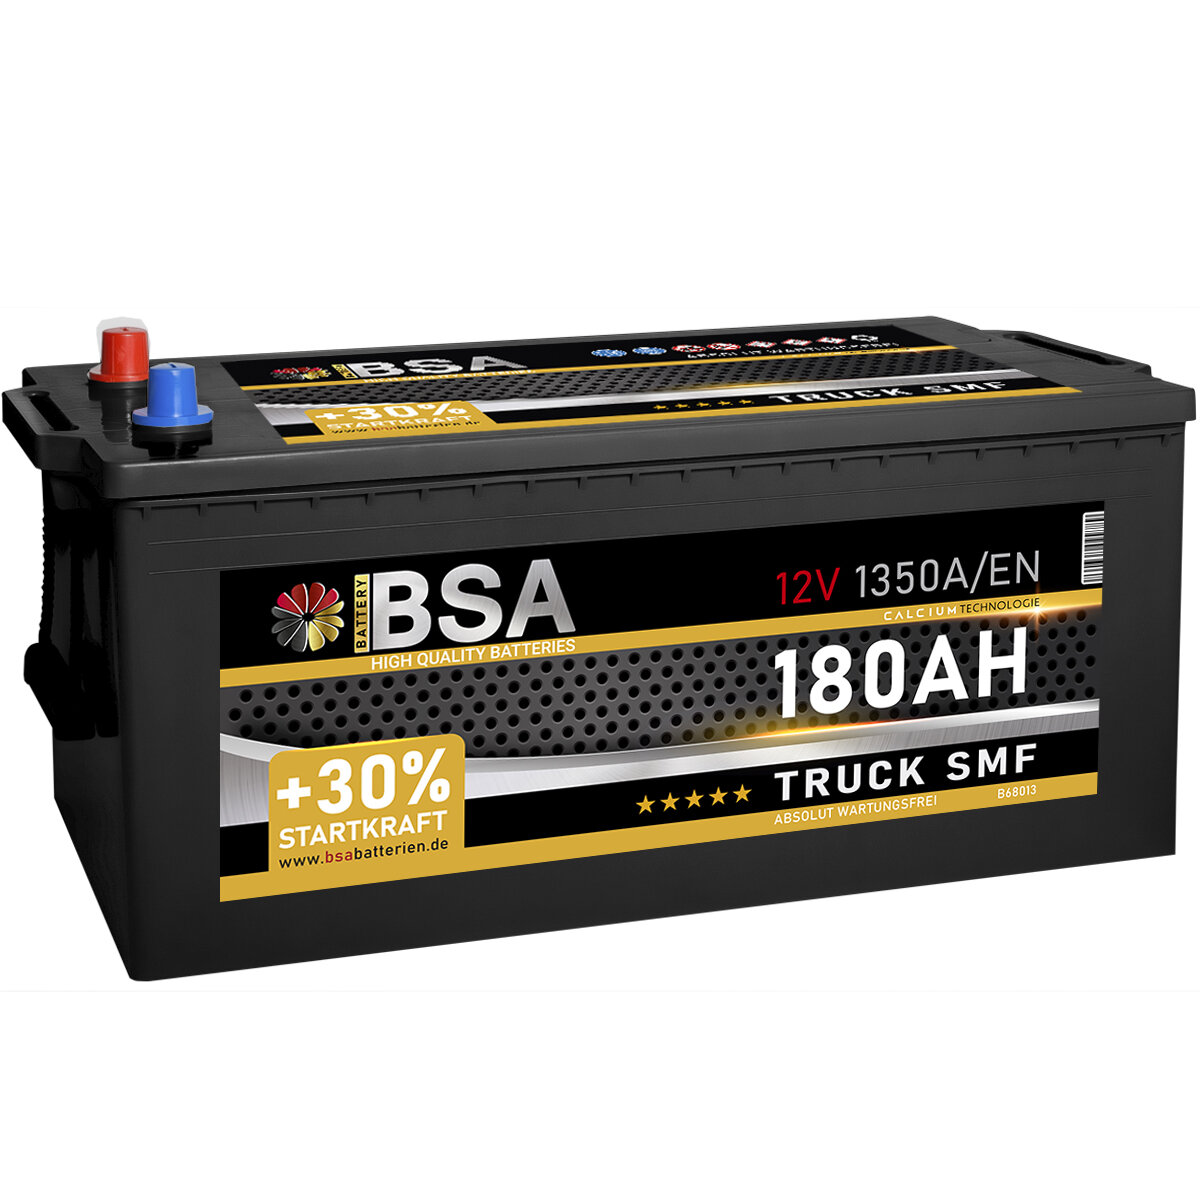 BSA Truck SMF LKW Batterie 180Ah 12V, 154,90 €